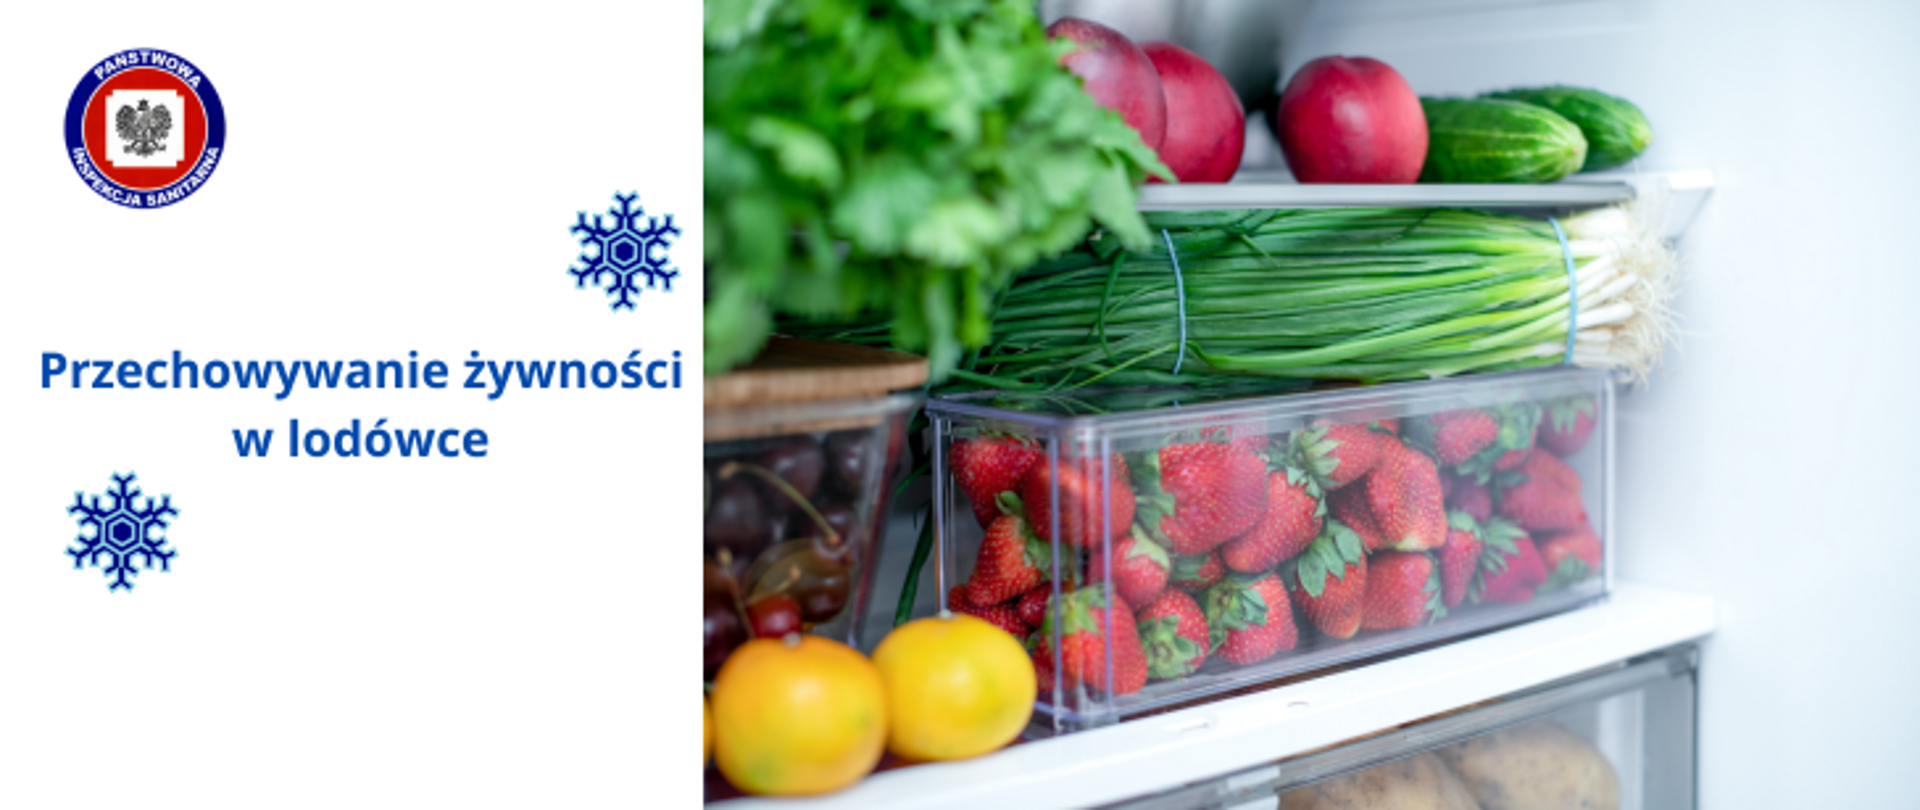 Po prawej stronie poukładane w lodówce różne warzywa i owoce, po lewej na jasnym tle dwie niebieskie śnieżynki i granatowy napis Przechowywanie żywności w lodówce, w lewym górnym rogu logo Państwowej Inspekcji Sanitarnej. 